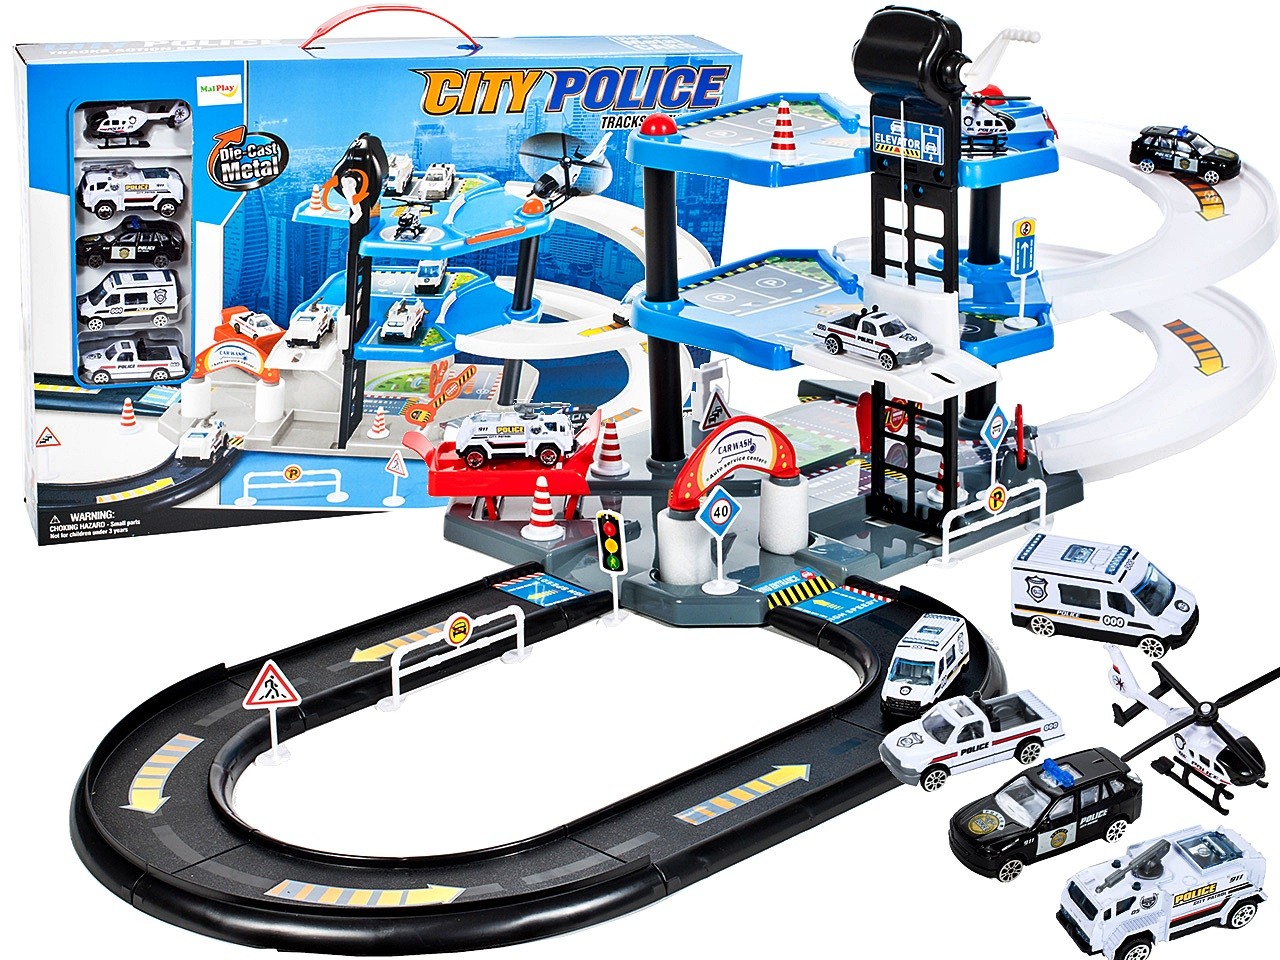 Set Joaca pentru Copii Parcare „City Police” cu Masinute Incluse si Elicopter, multiple accesorii